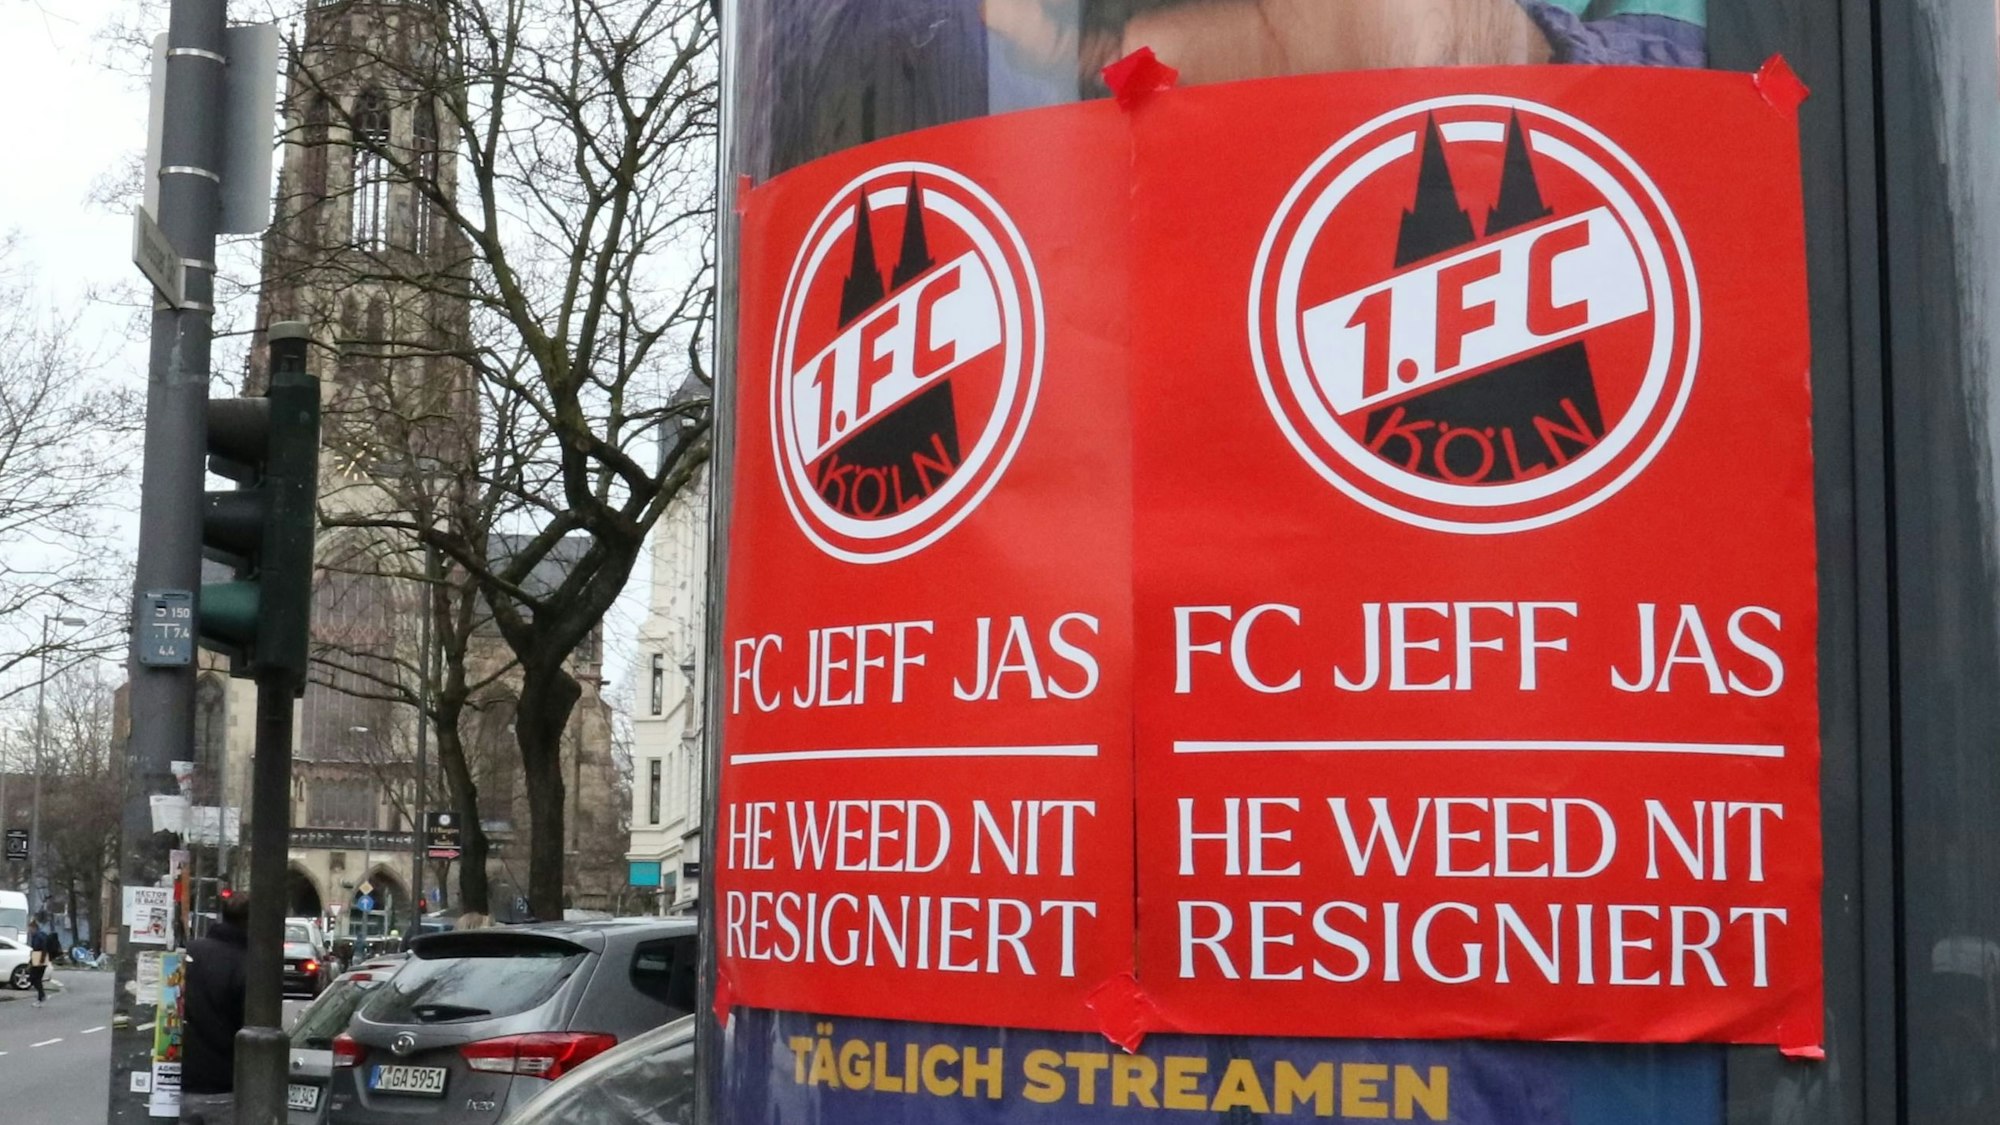 Auf einer Litfaßsäule kleben rote Plakate des 1. FC Köln mit der Aufschrift: „FC Jeff Jas – He weed nit resigniert“.